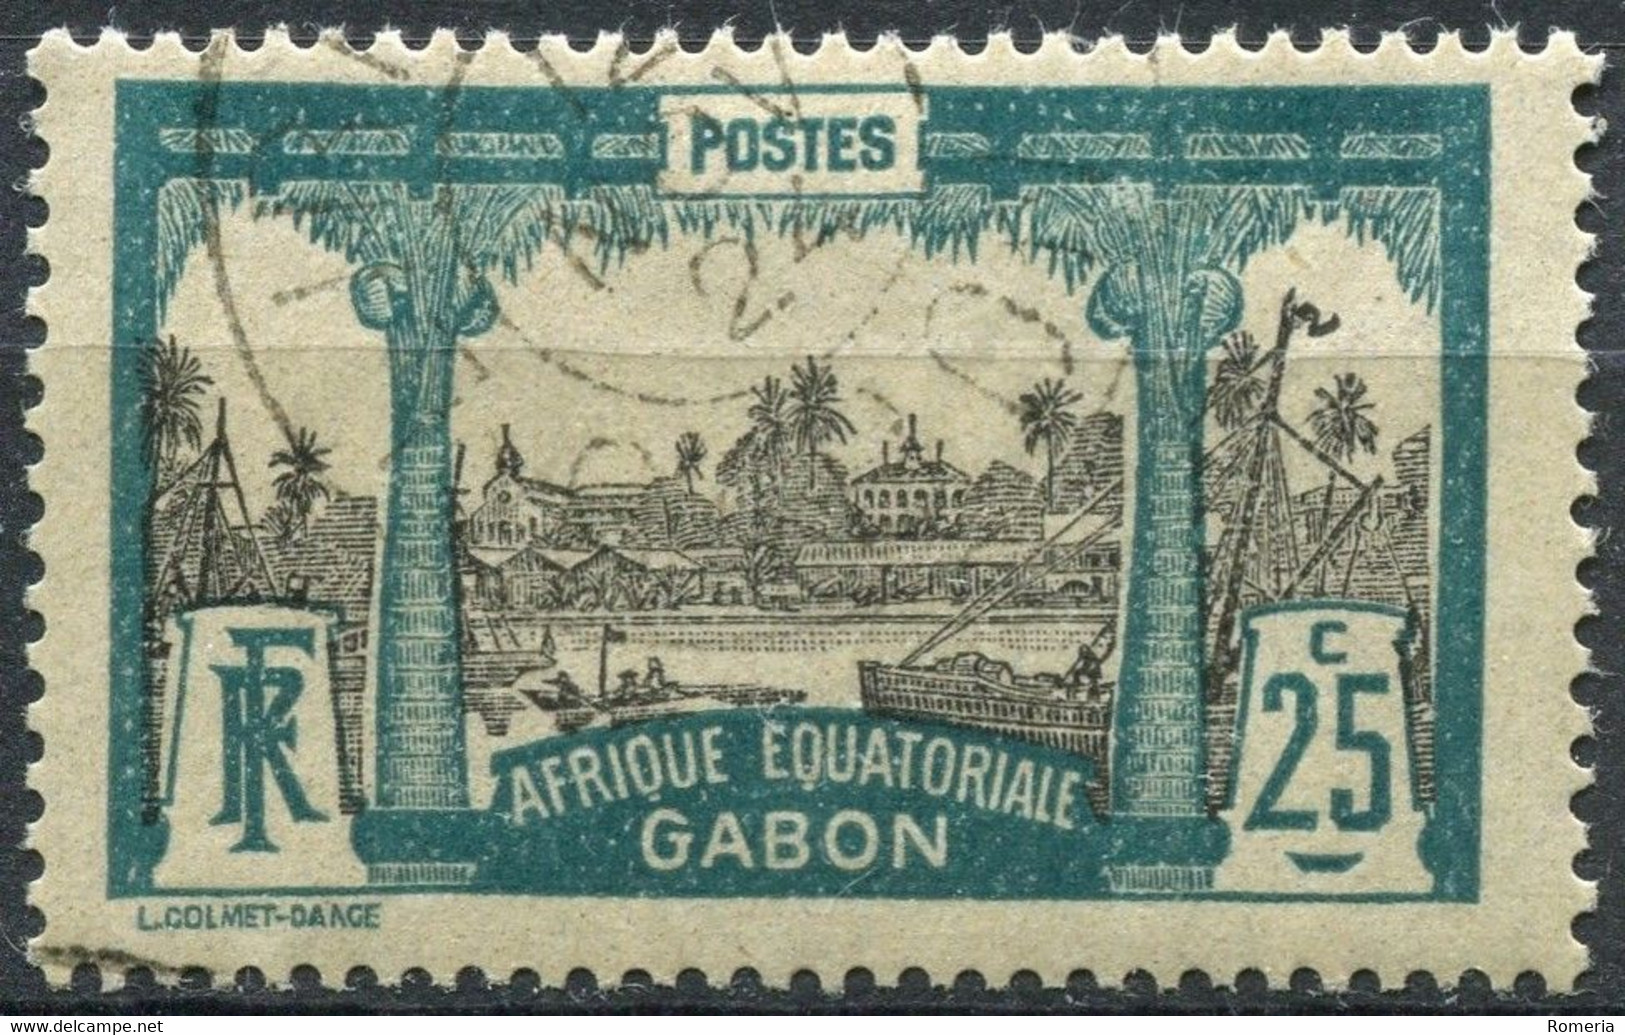 Gabon - 1910 - >1932 - Lot timbres * TC et oblitérés - Nºs dans description